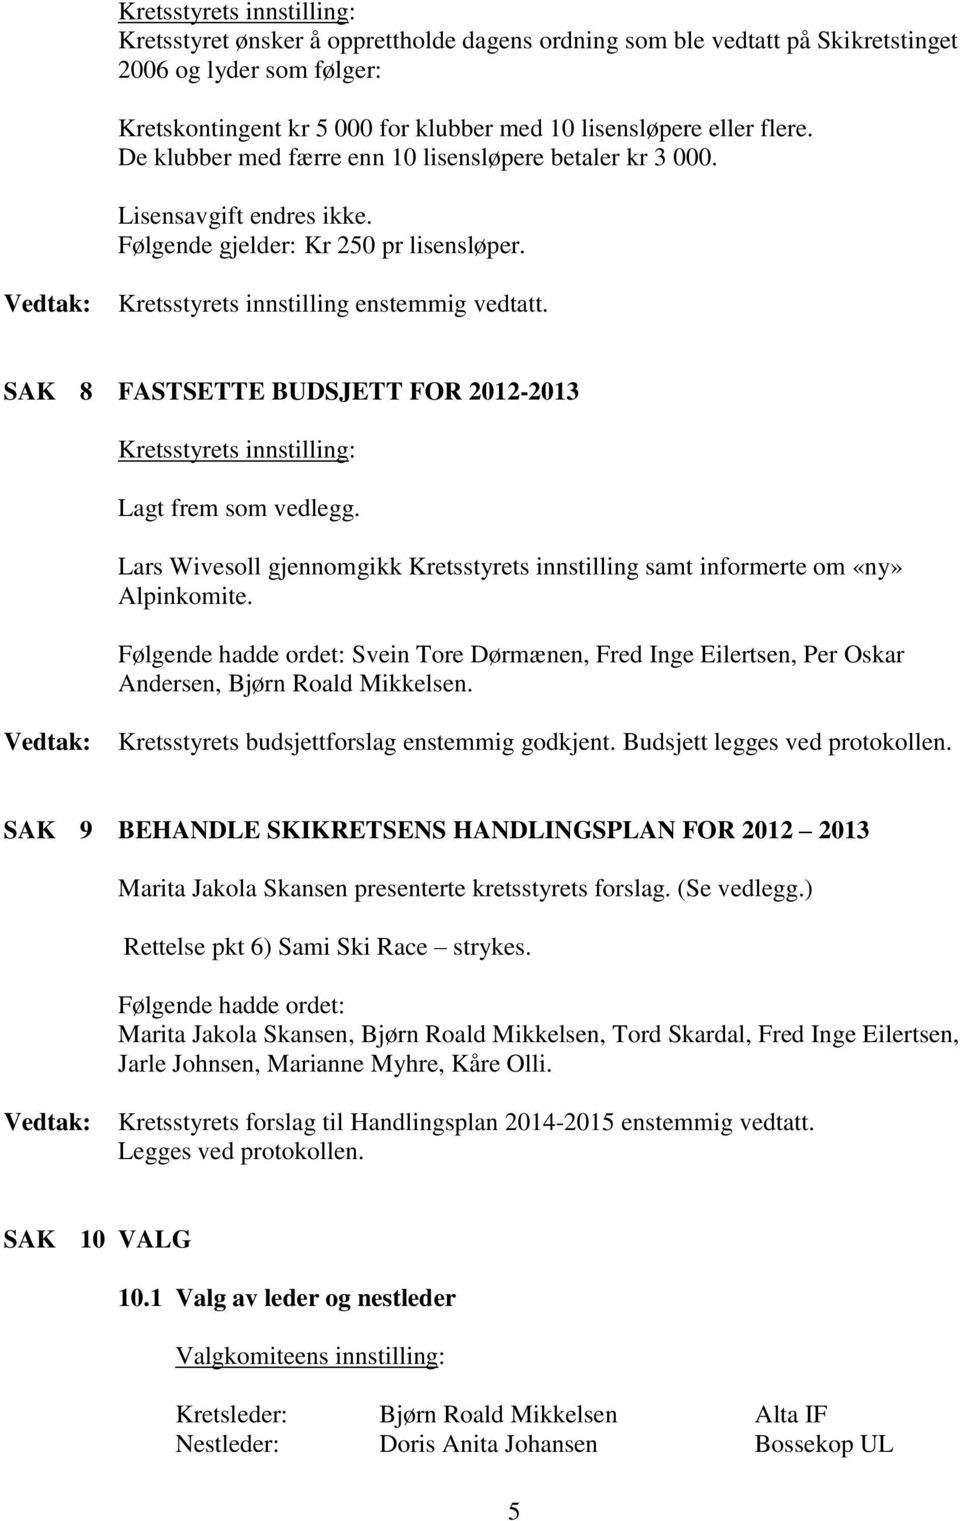 SAK 8 FASTSETTE BUDSJETT FOR 2012-2013 Lagt frem som vedlegg. Lars Wivesoll gjennomgikk Kretsstyrets innstilling samt informerte om «ny» Alpinkomite.